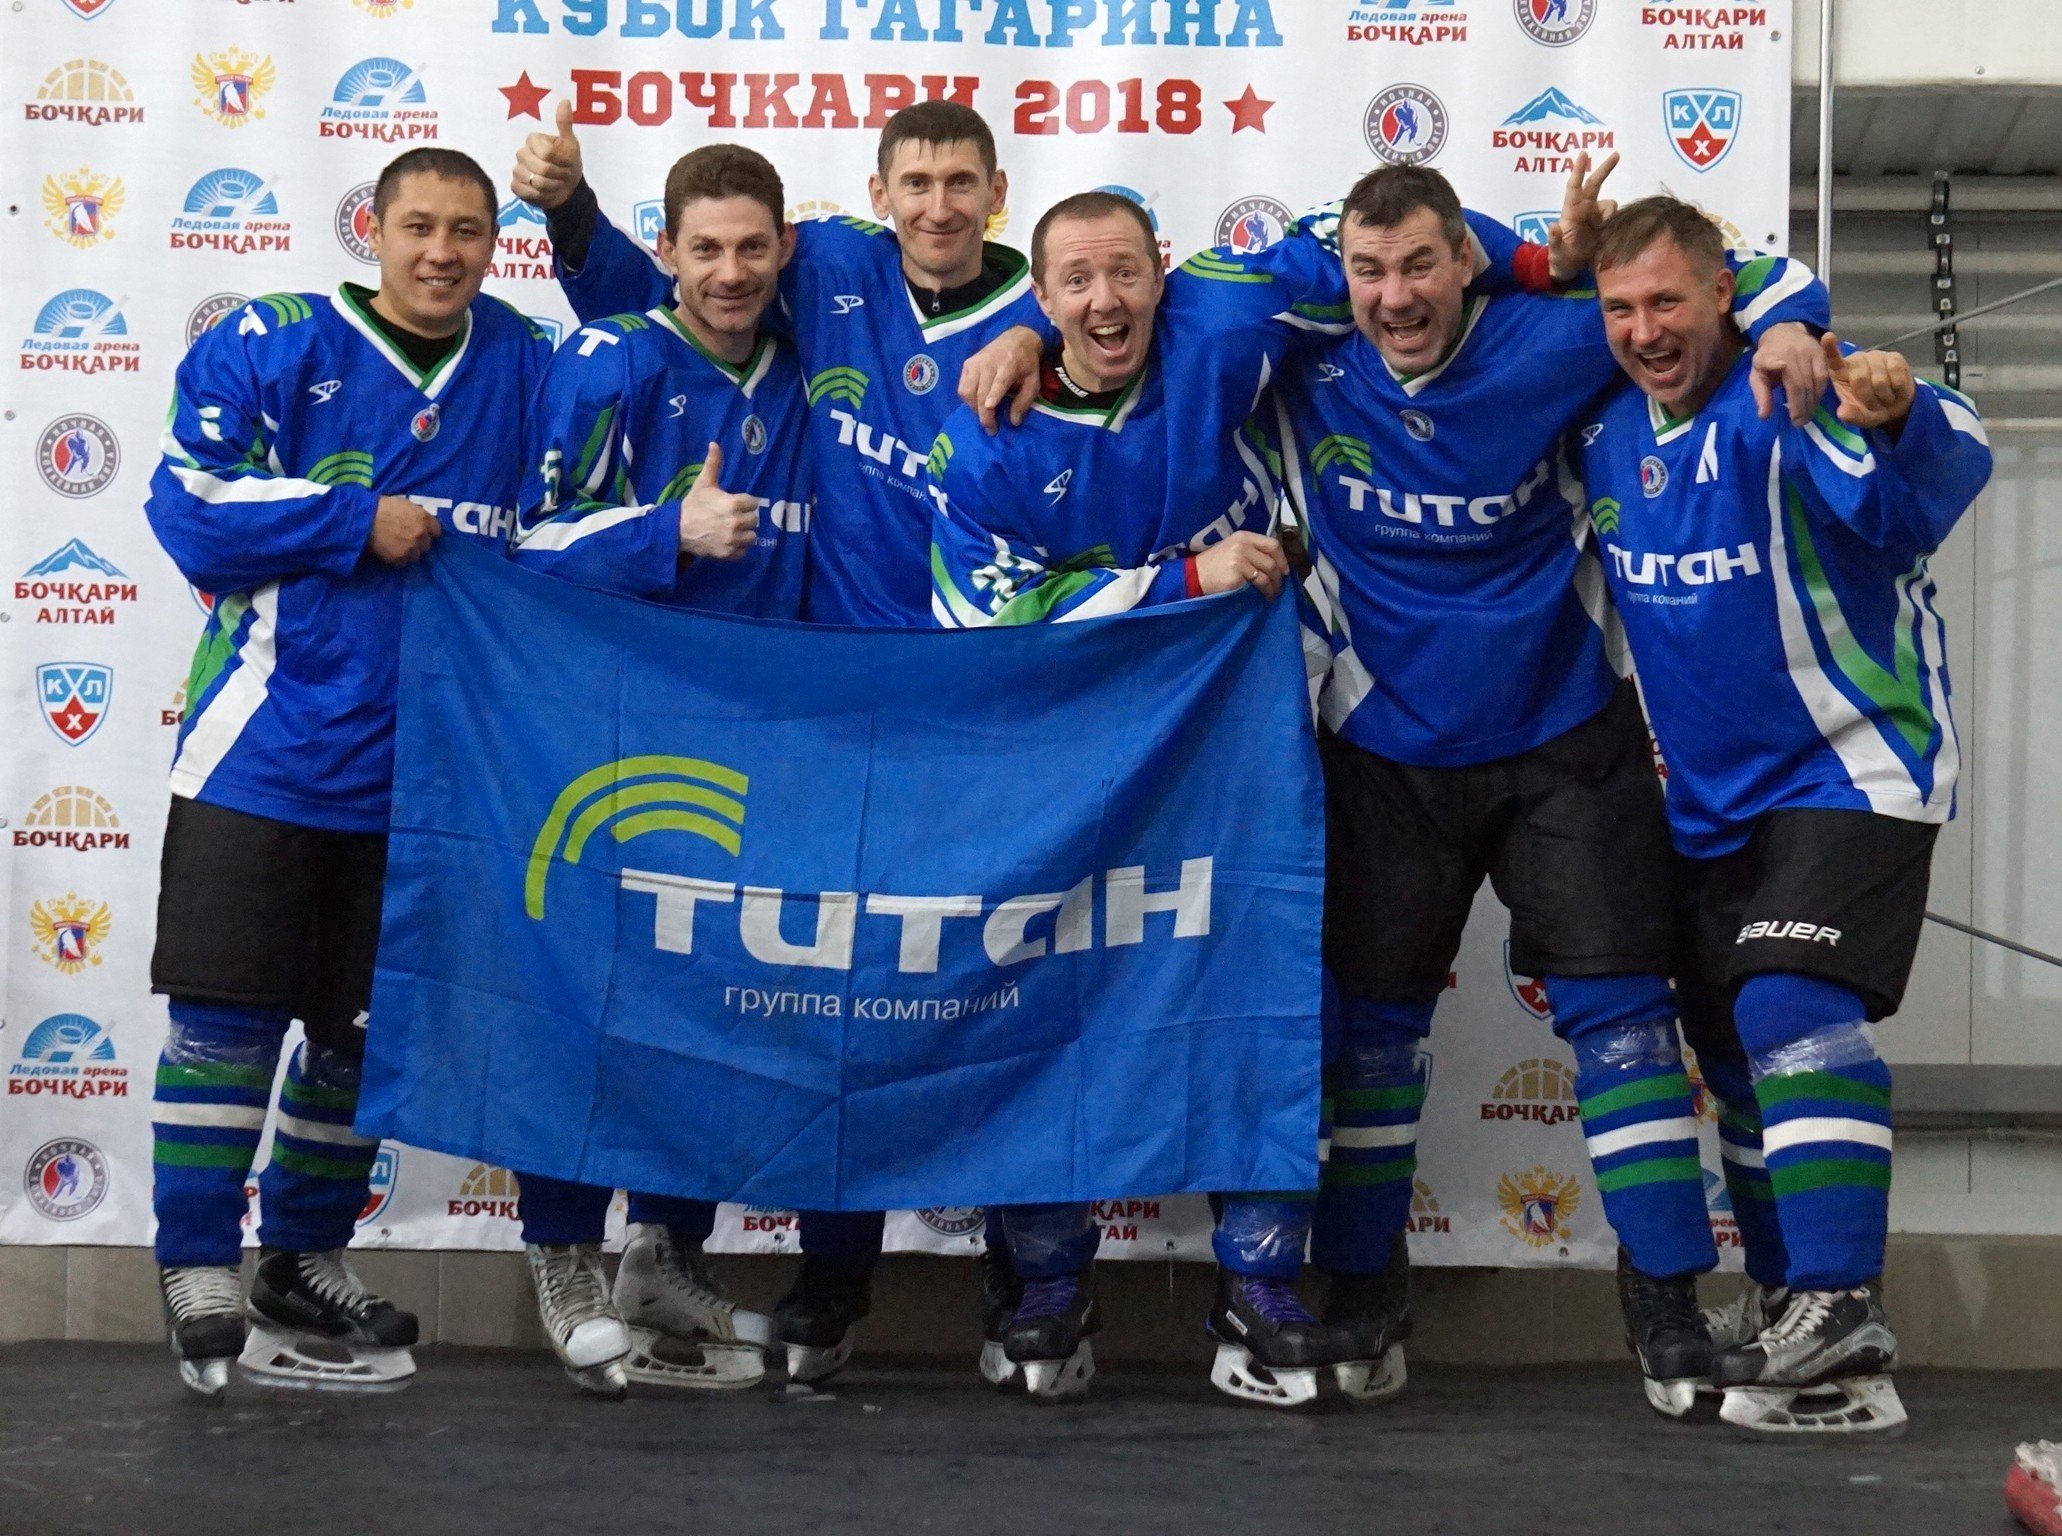 Сайт титана омск. Хк Титан Омск. Хоккейная команда Титан. Титан Омск хоккей. Команда Титан хоккей.